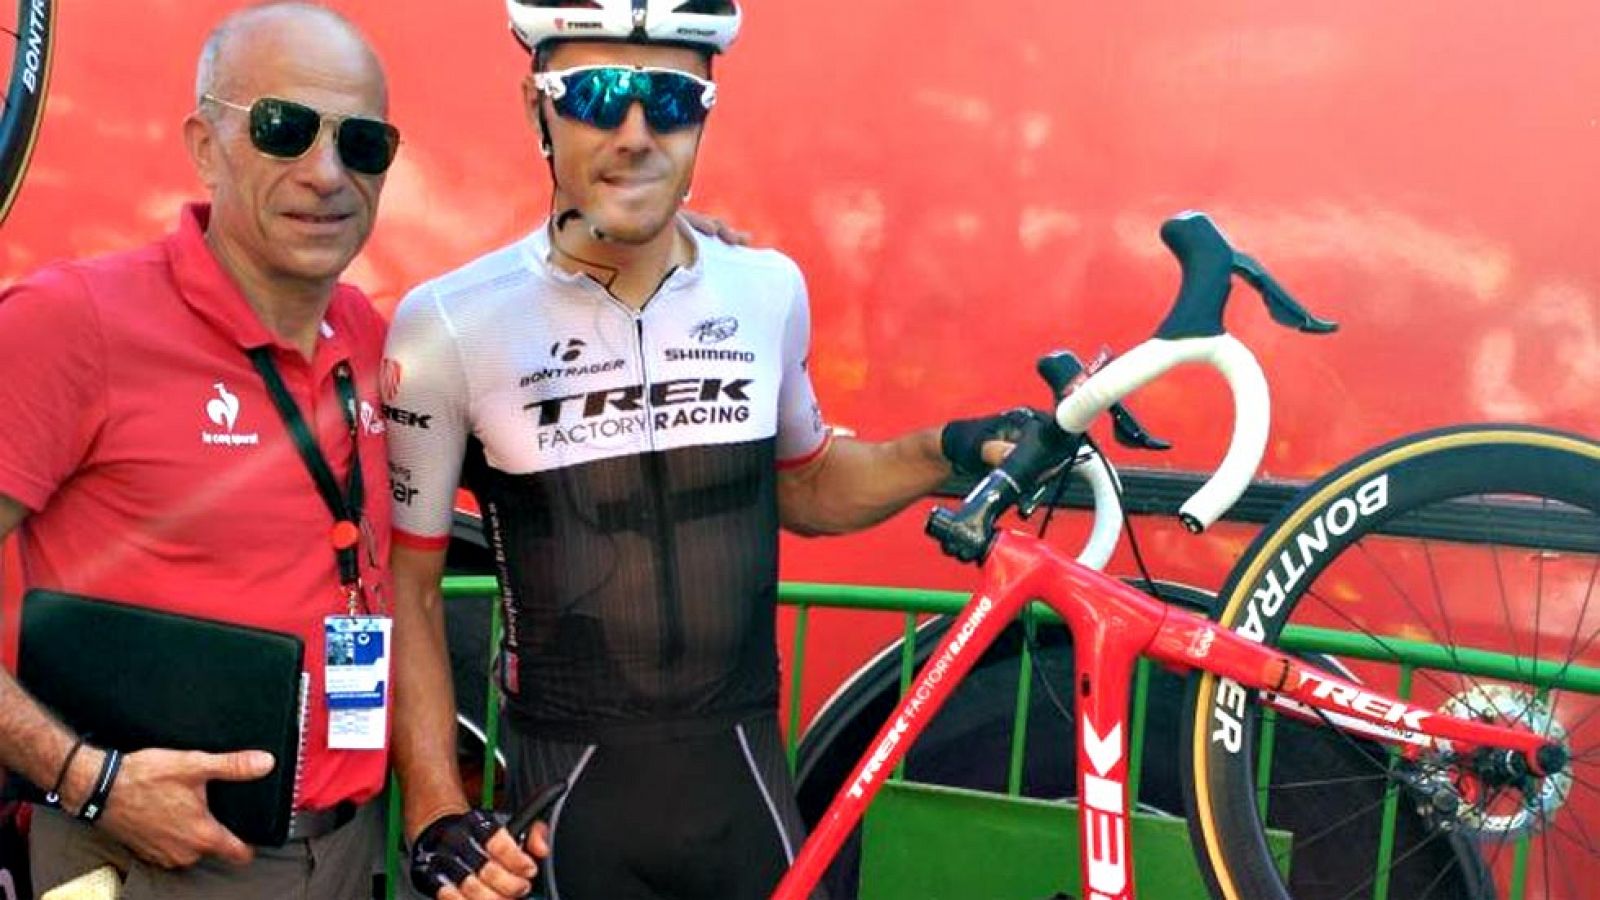 Markel Irizar analiza su experiencia con los frenos de disco en la 6ª etapa de la Vuelta